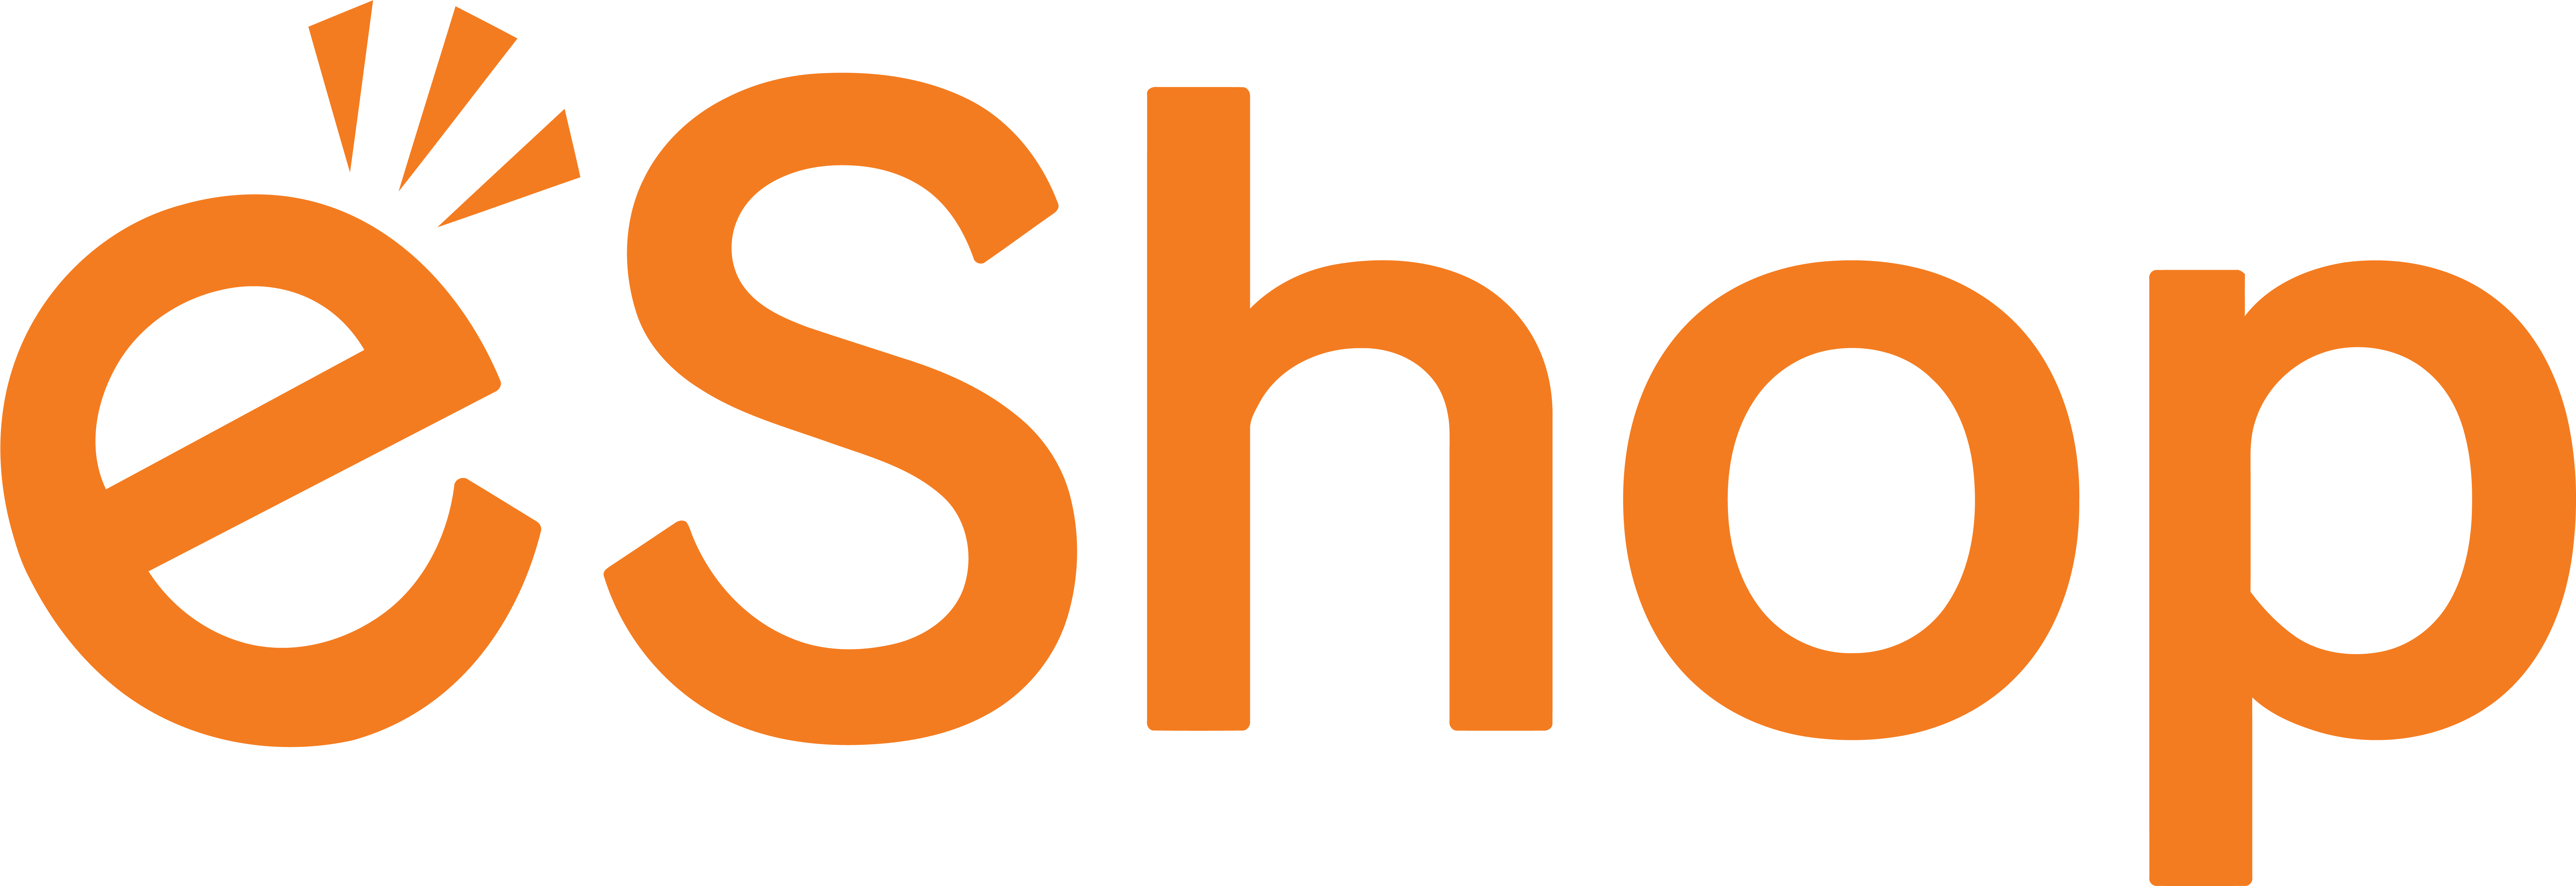 E shop pro. Eshop logo. Нинтендо ешоп логотип. E shop лого. Criteo логотип.